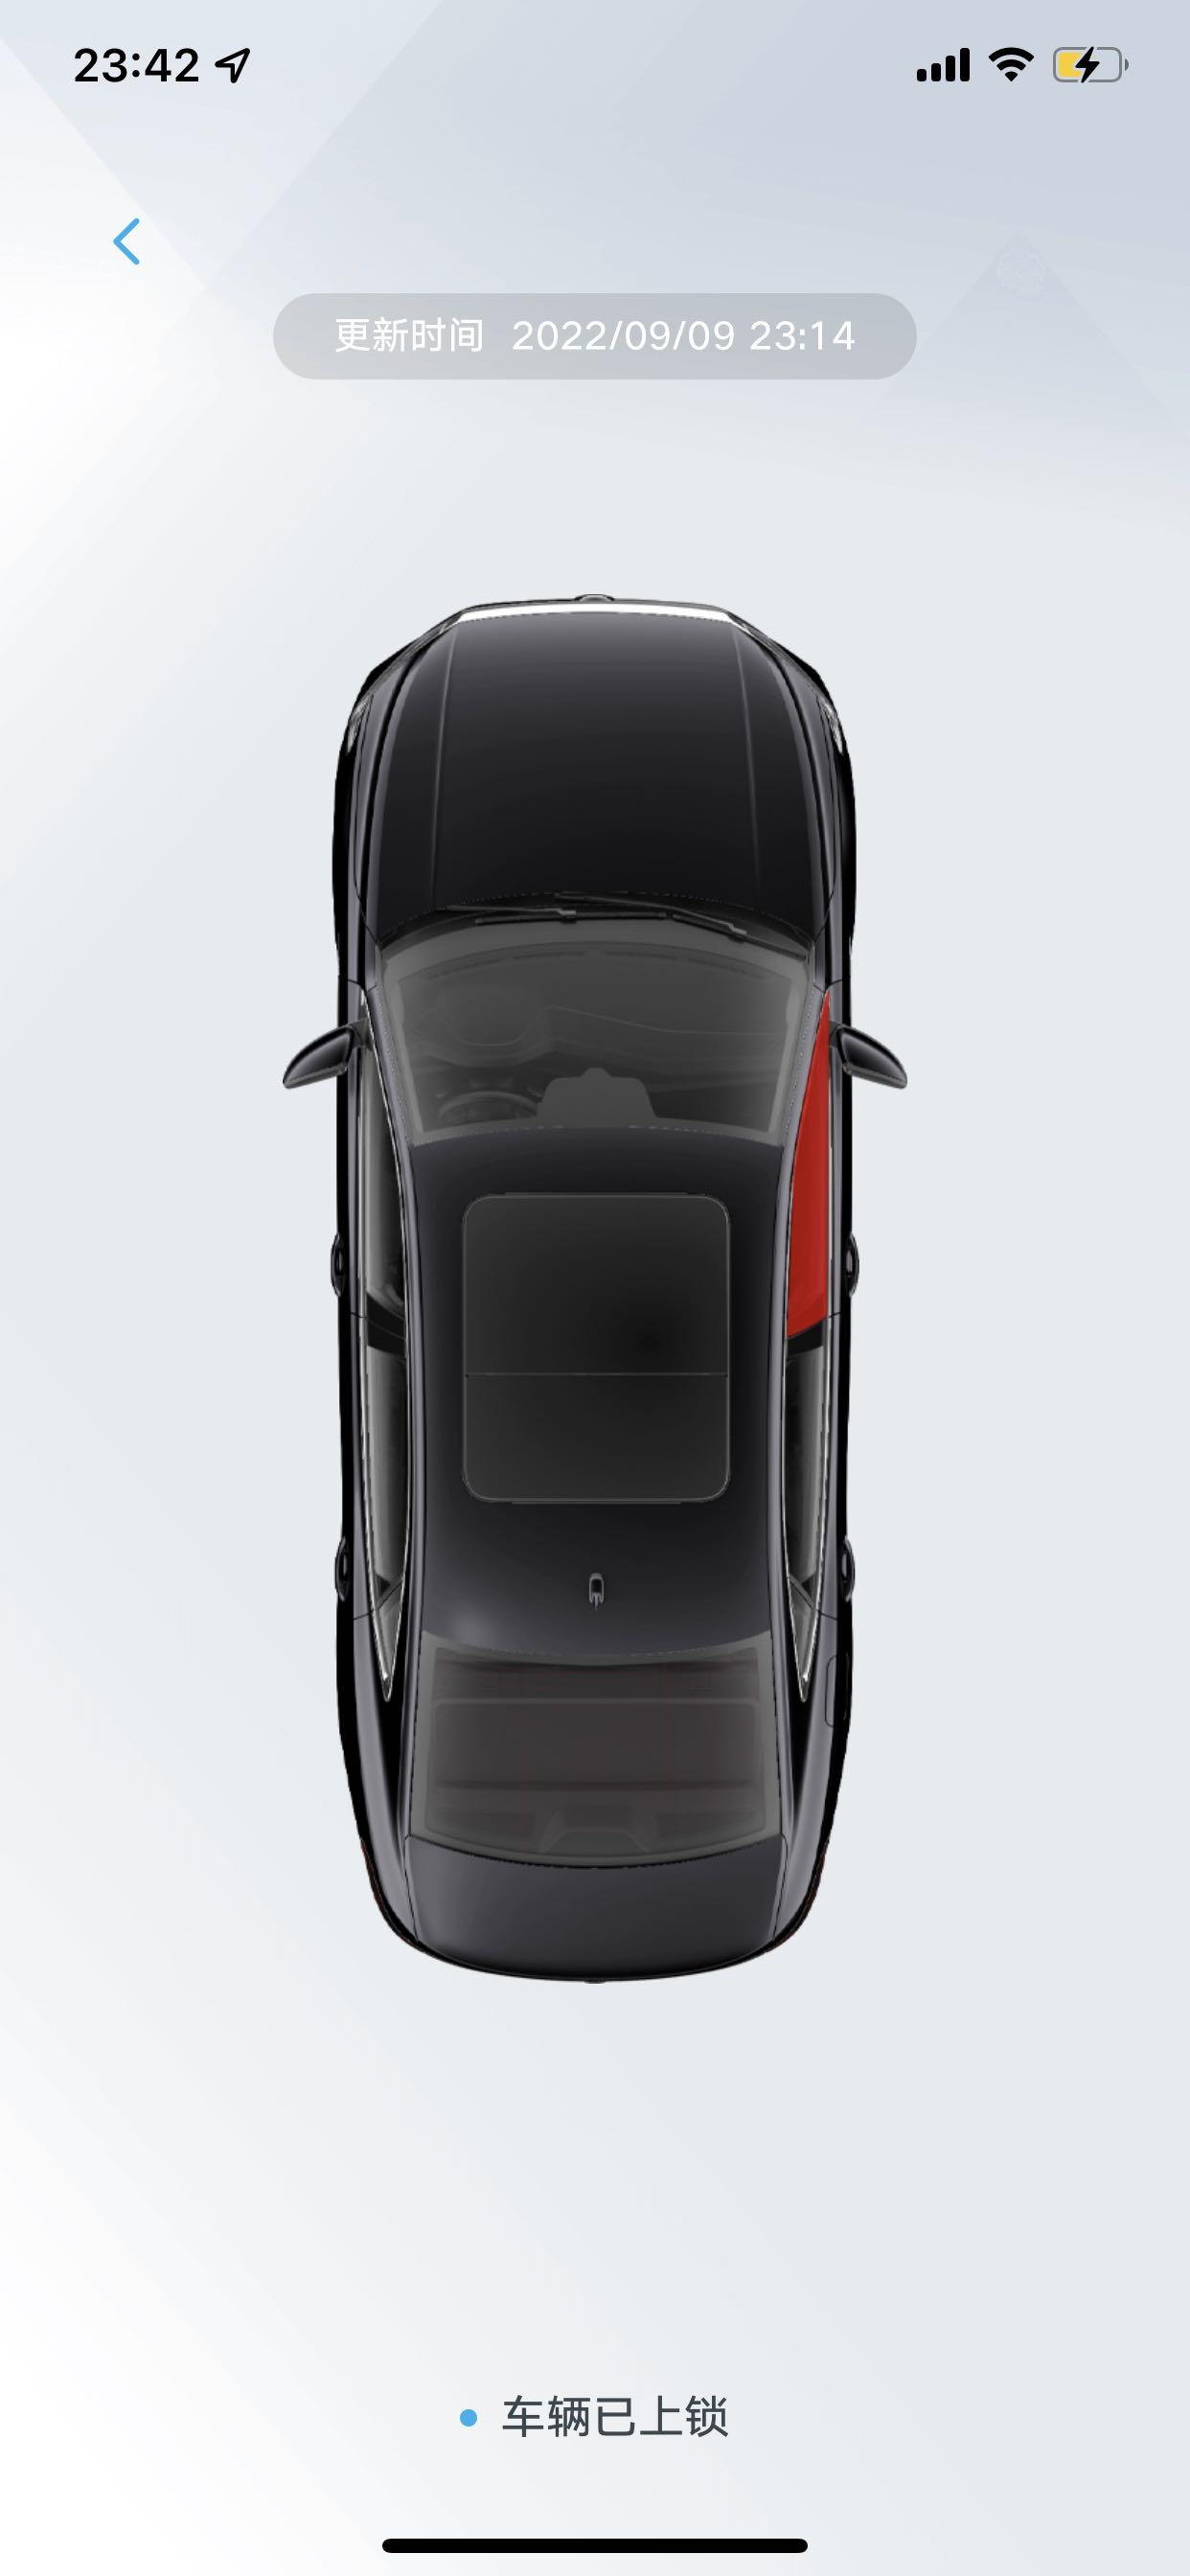 22年新款帕萨特330豪华版，锁车以后上汽大众app里面图片显示副驾驶车窗玻璃是红色的，请问各位大师这是什么原因导致的，